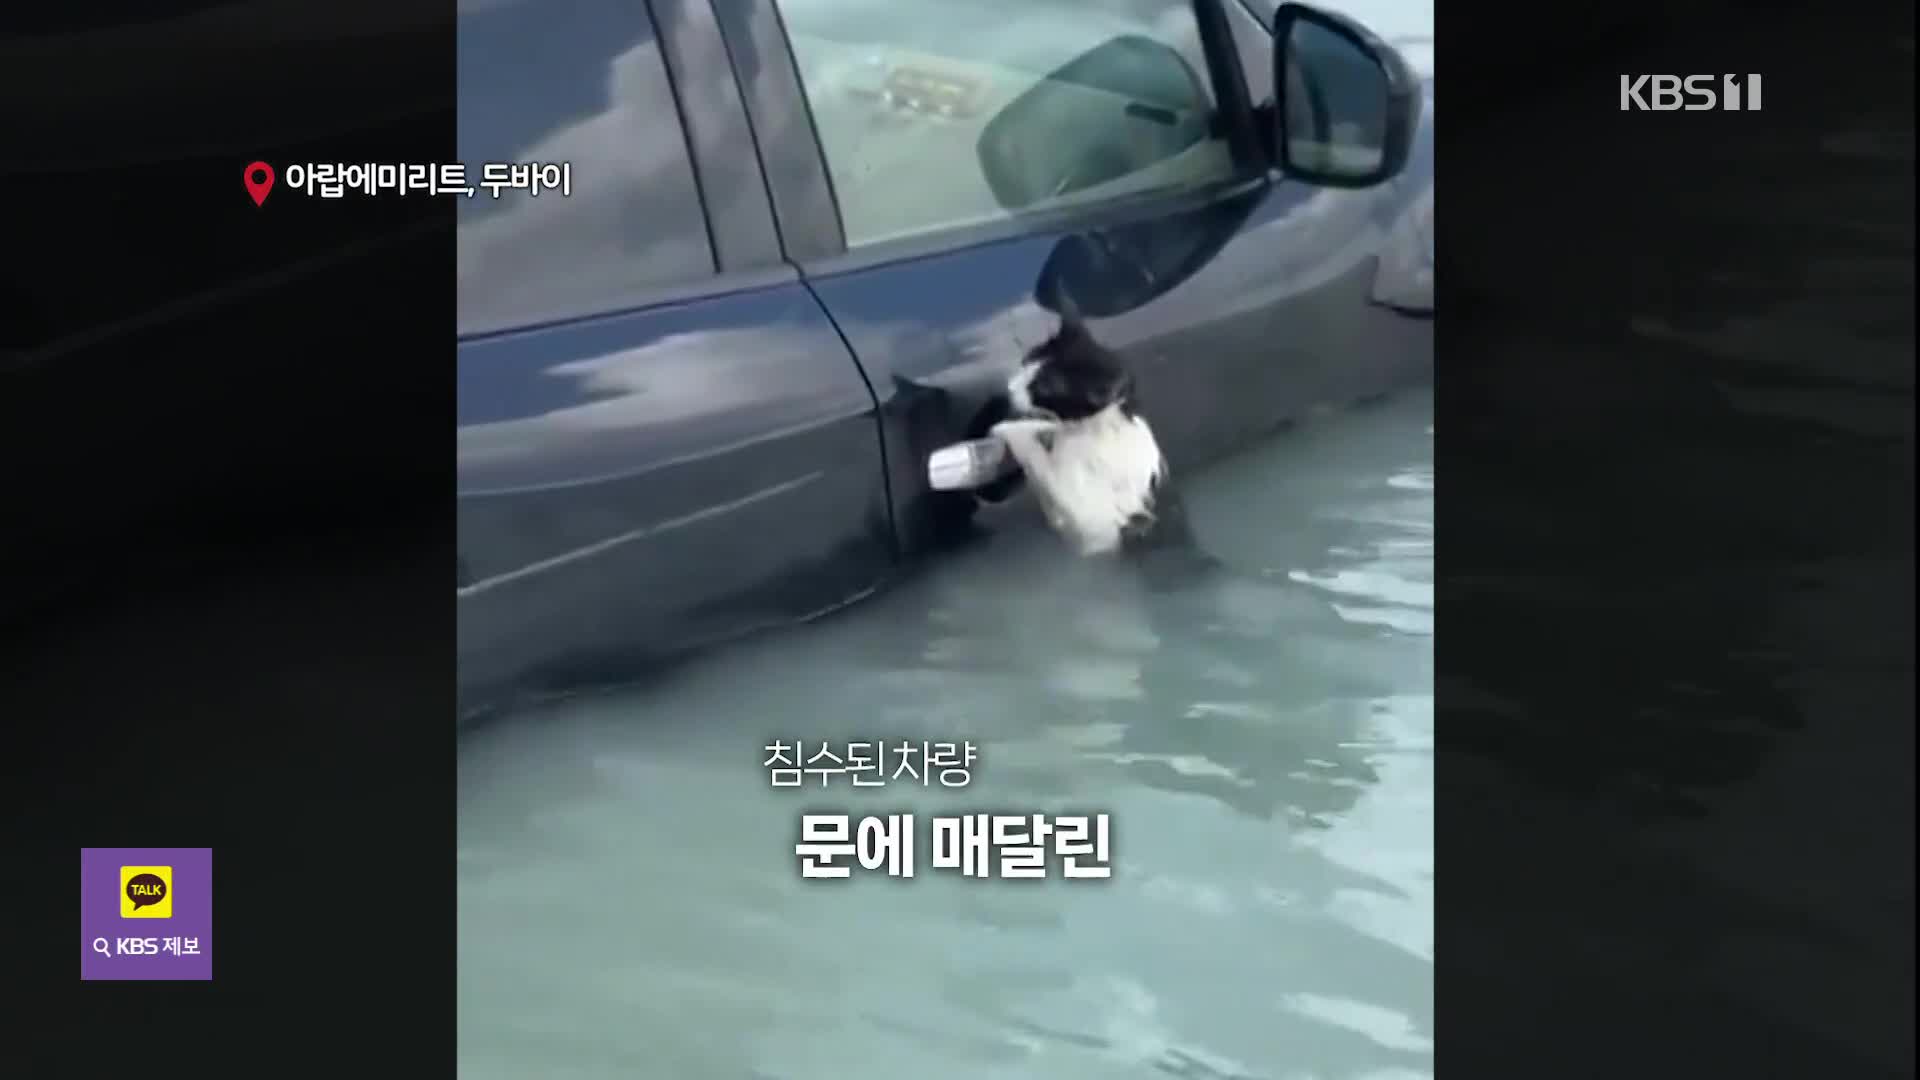 [오늘의 영상] 침수된 차 문고리 잡고 버틴 고양이 구조 현장